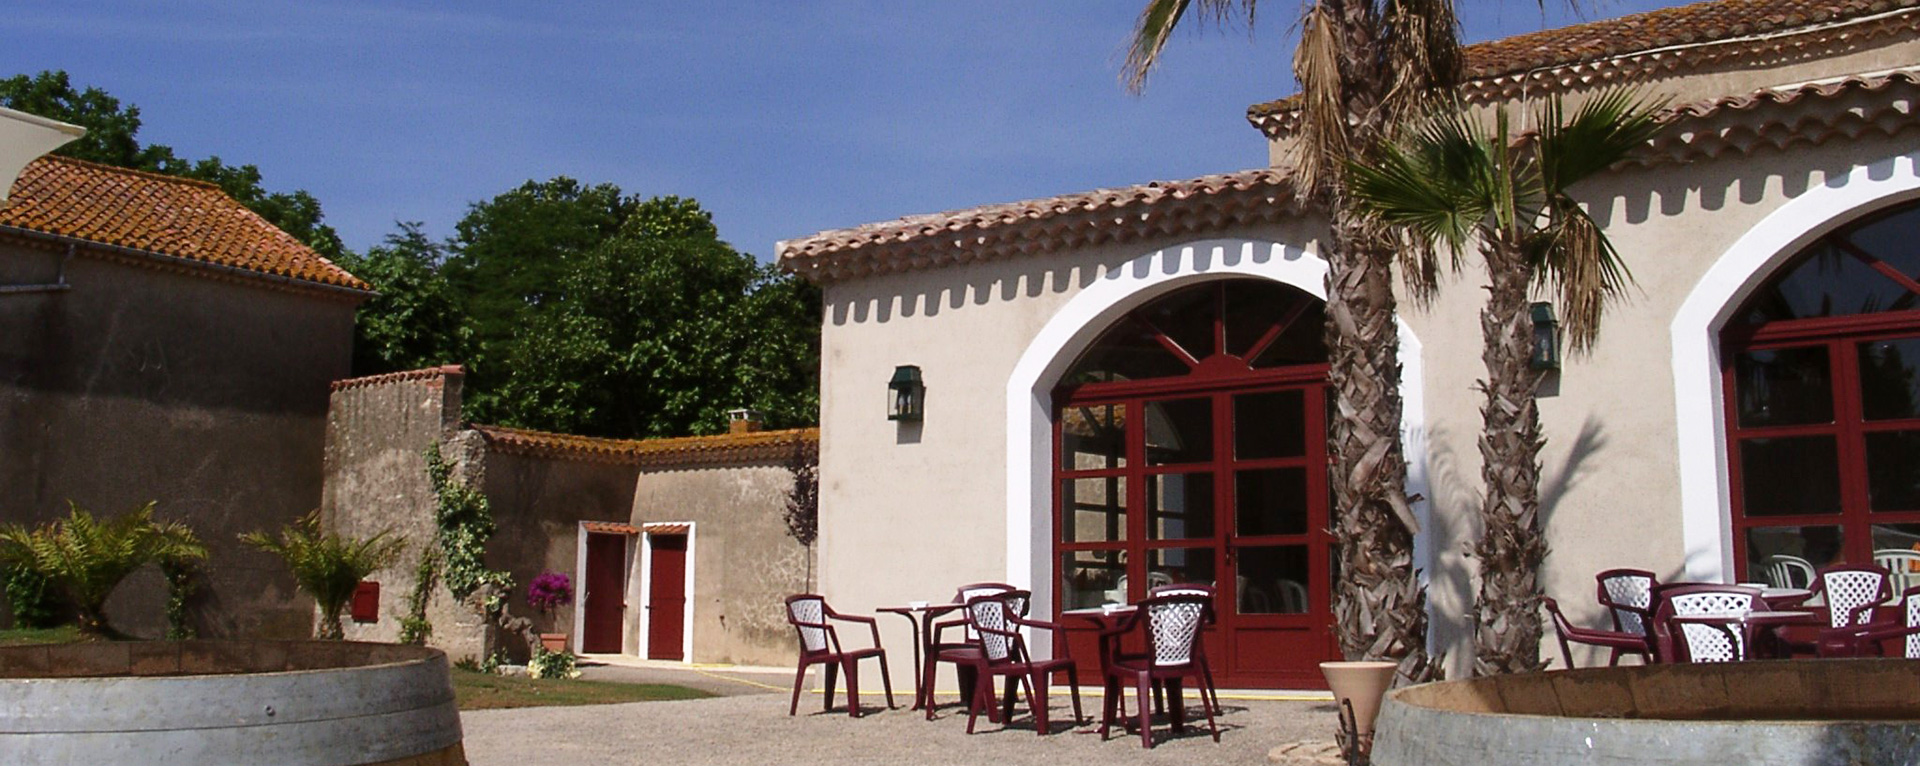 Vue extérieure de jour de la salle de réception de la Bergerie de la Vernède près de Narbonne dans l'Aude